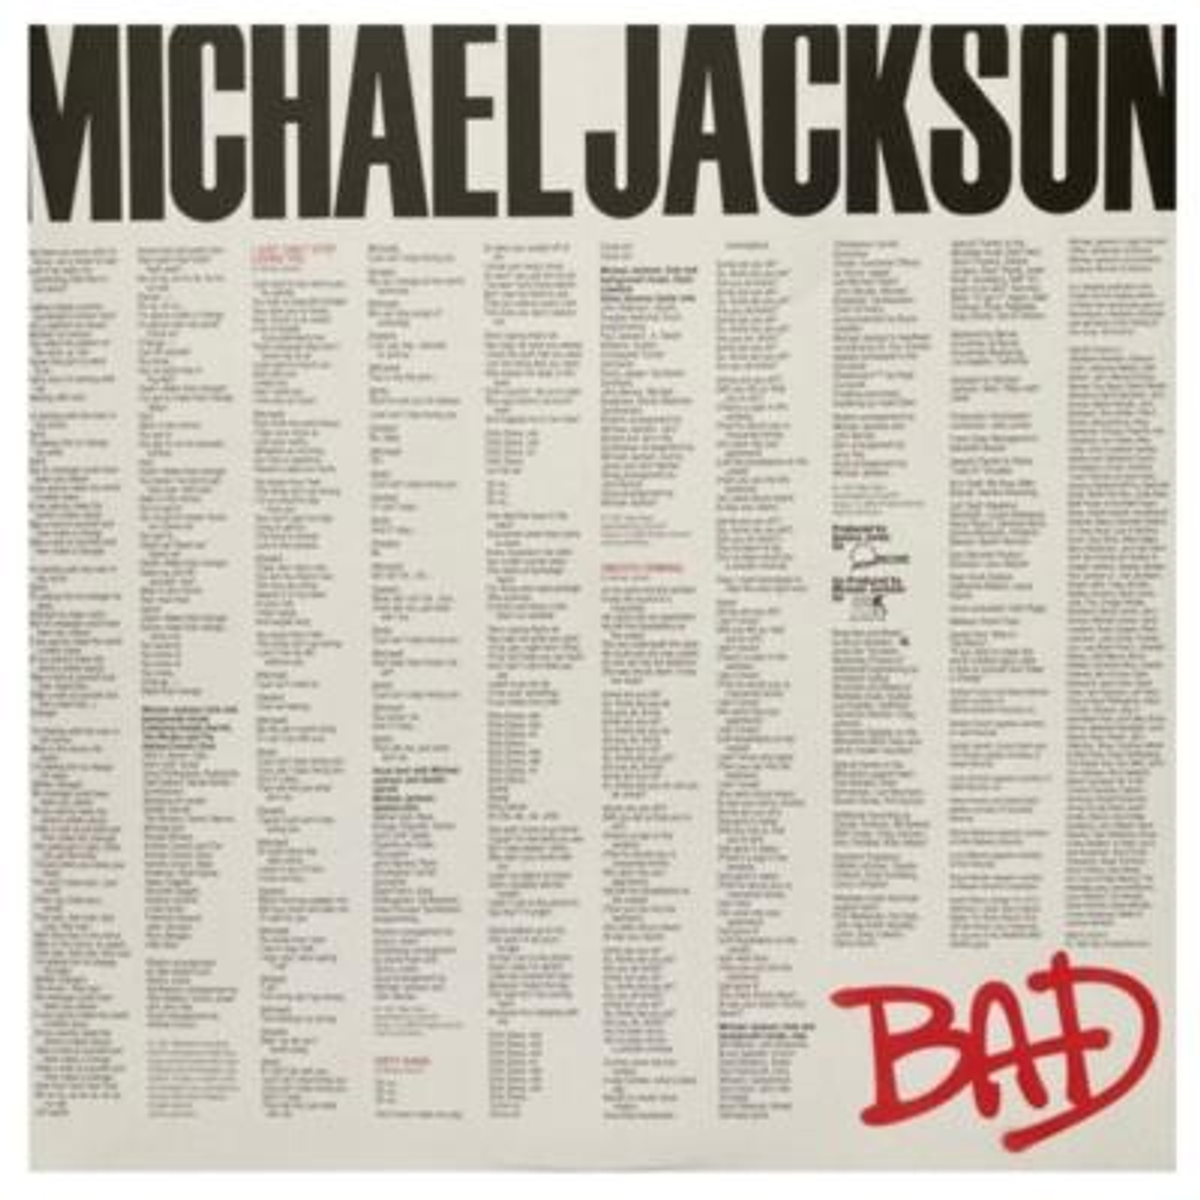 Michael Jackson - Bad - Vinilo